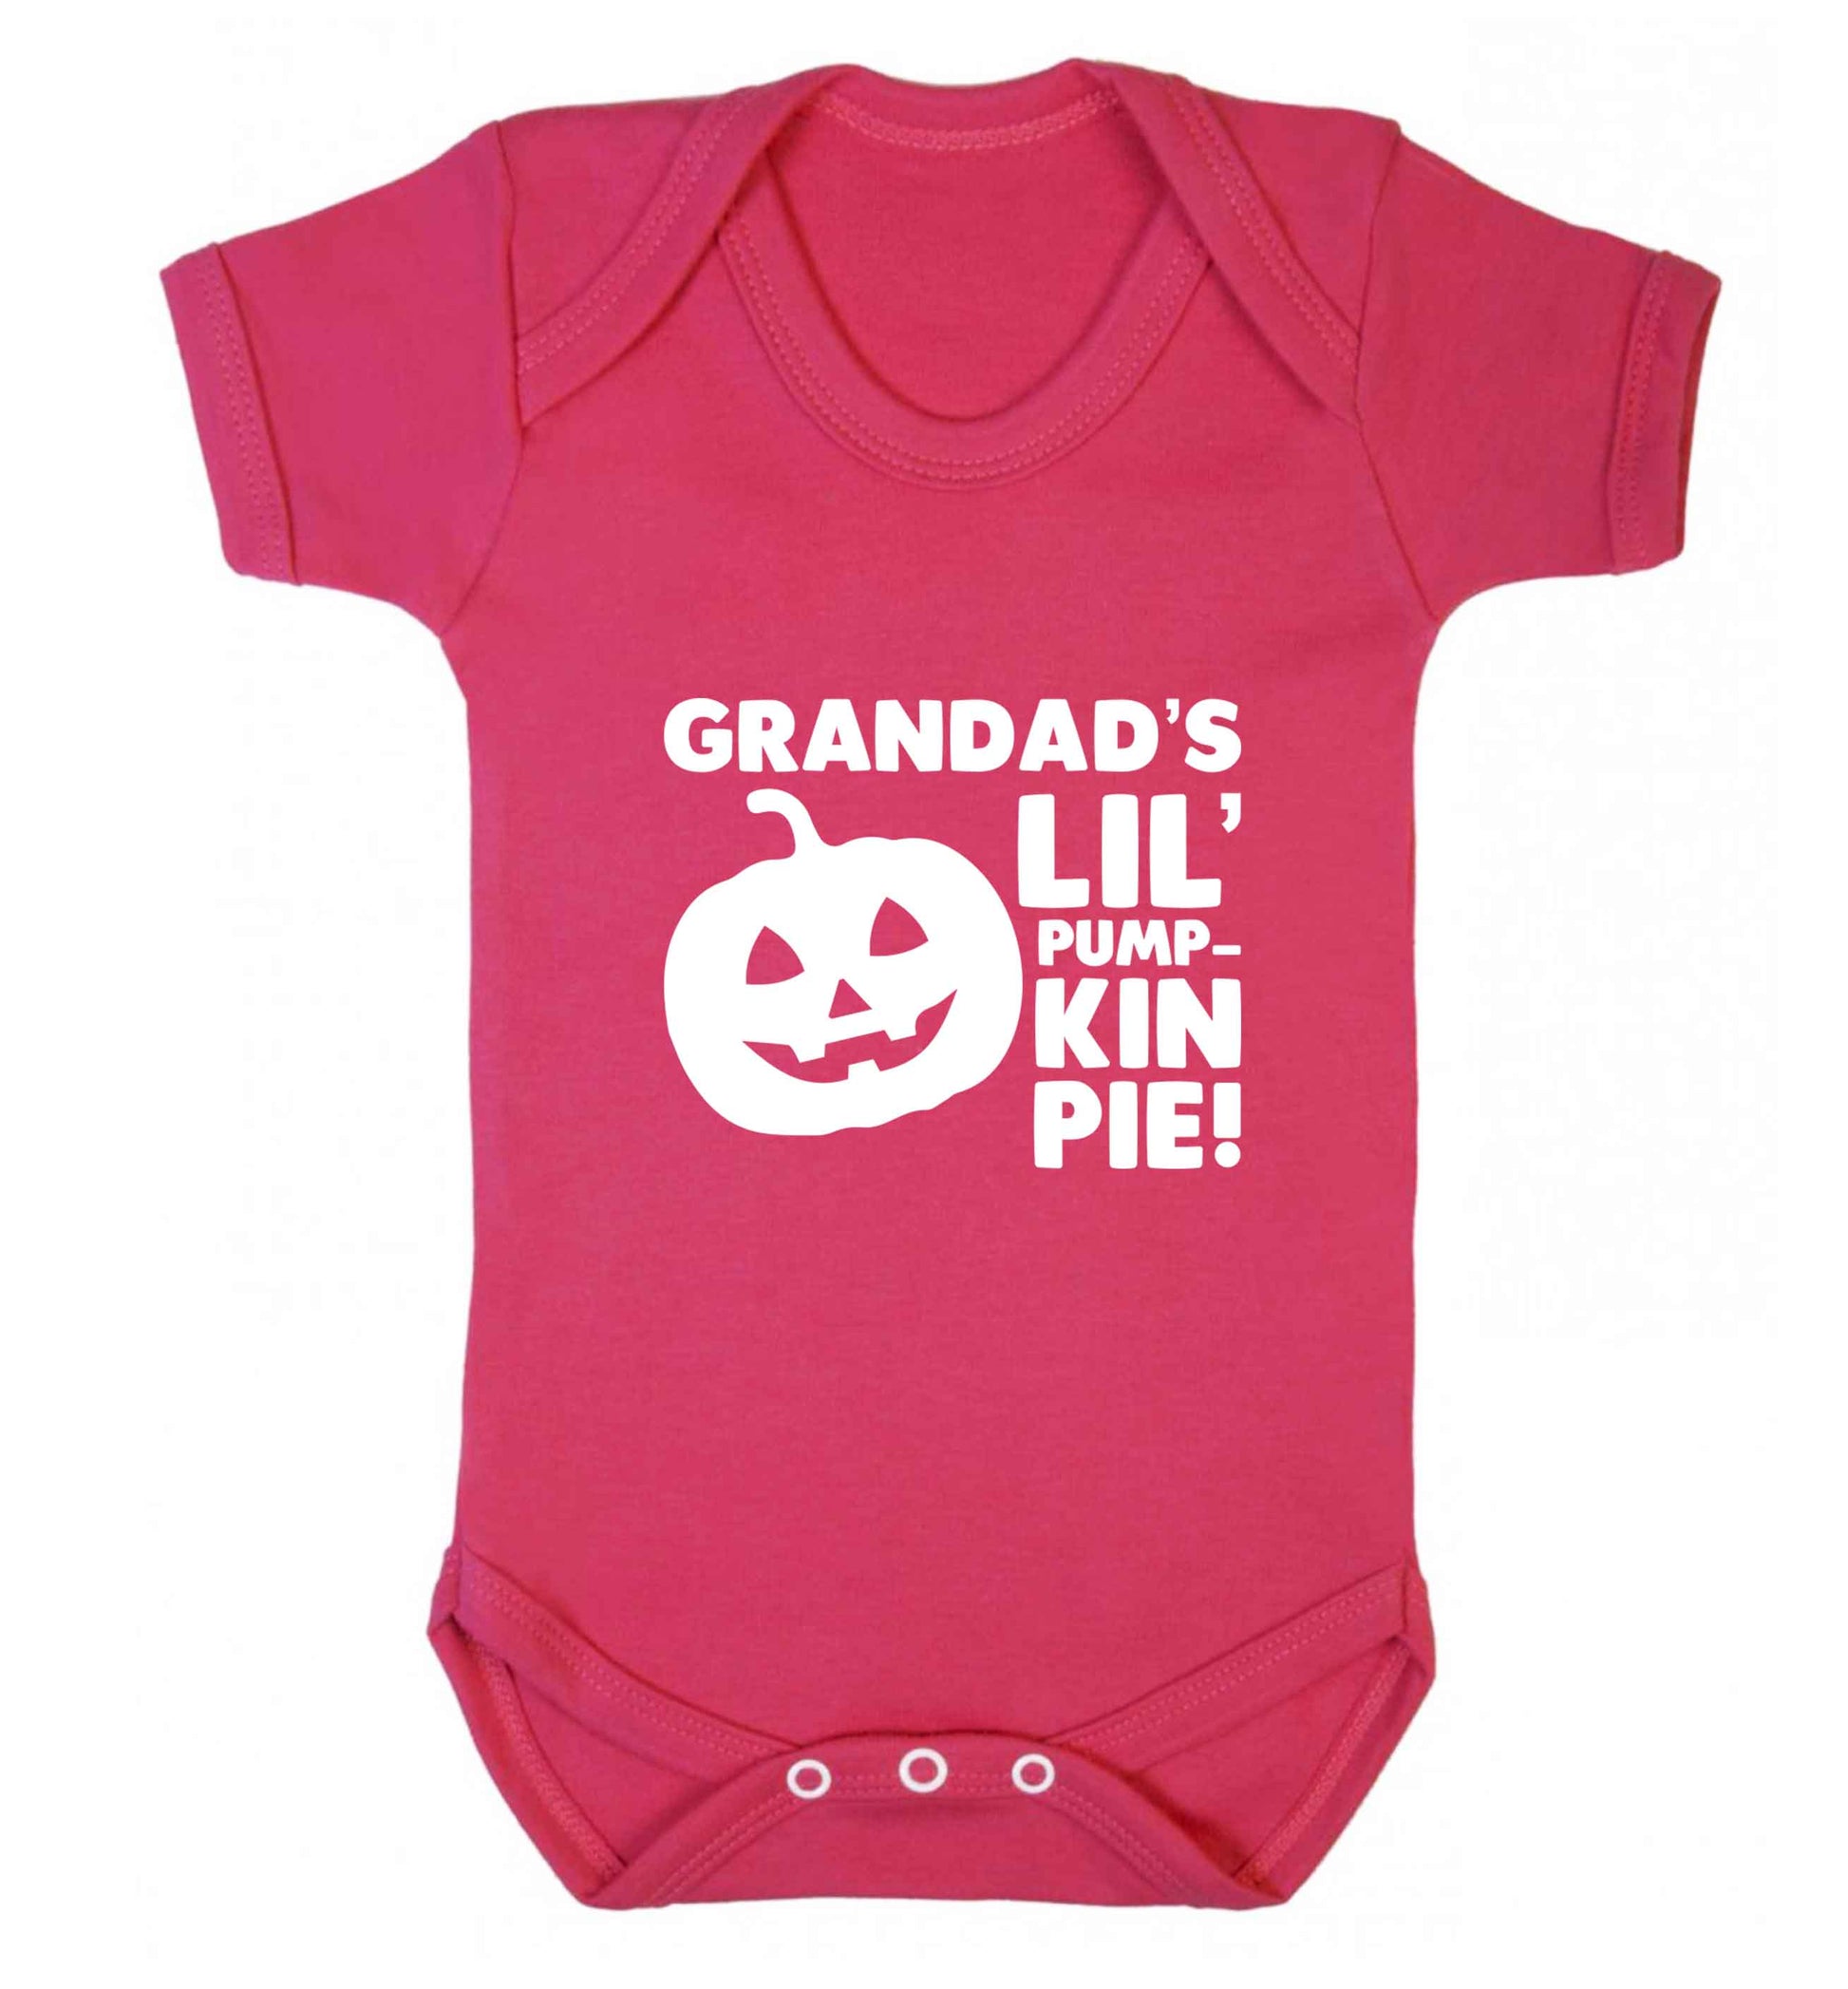 Grandad's lil' pumpkin pie baby vest dark pink 18-24 months